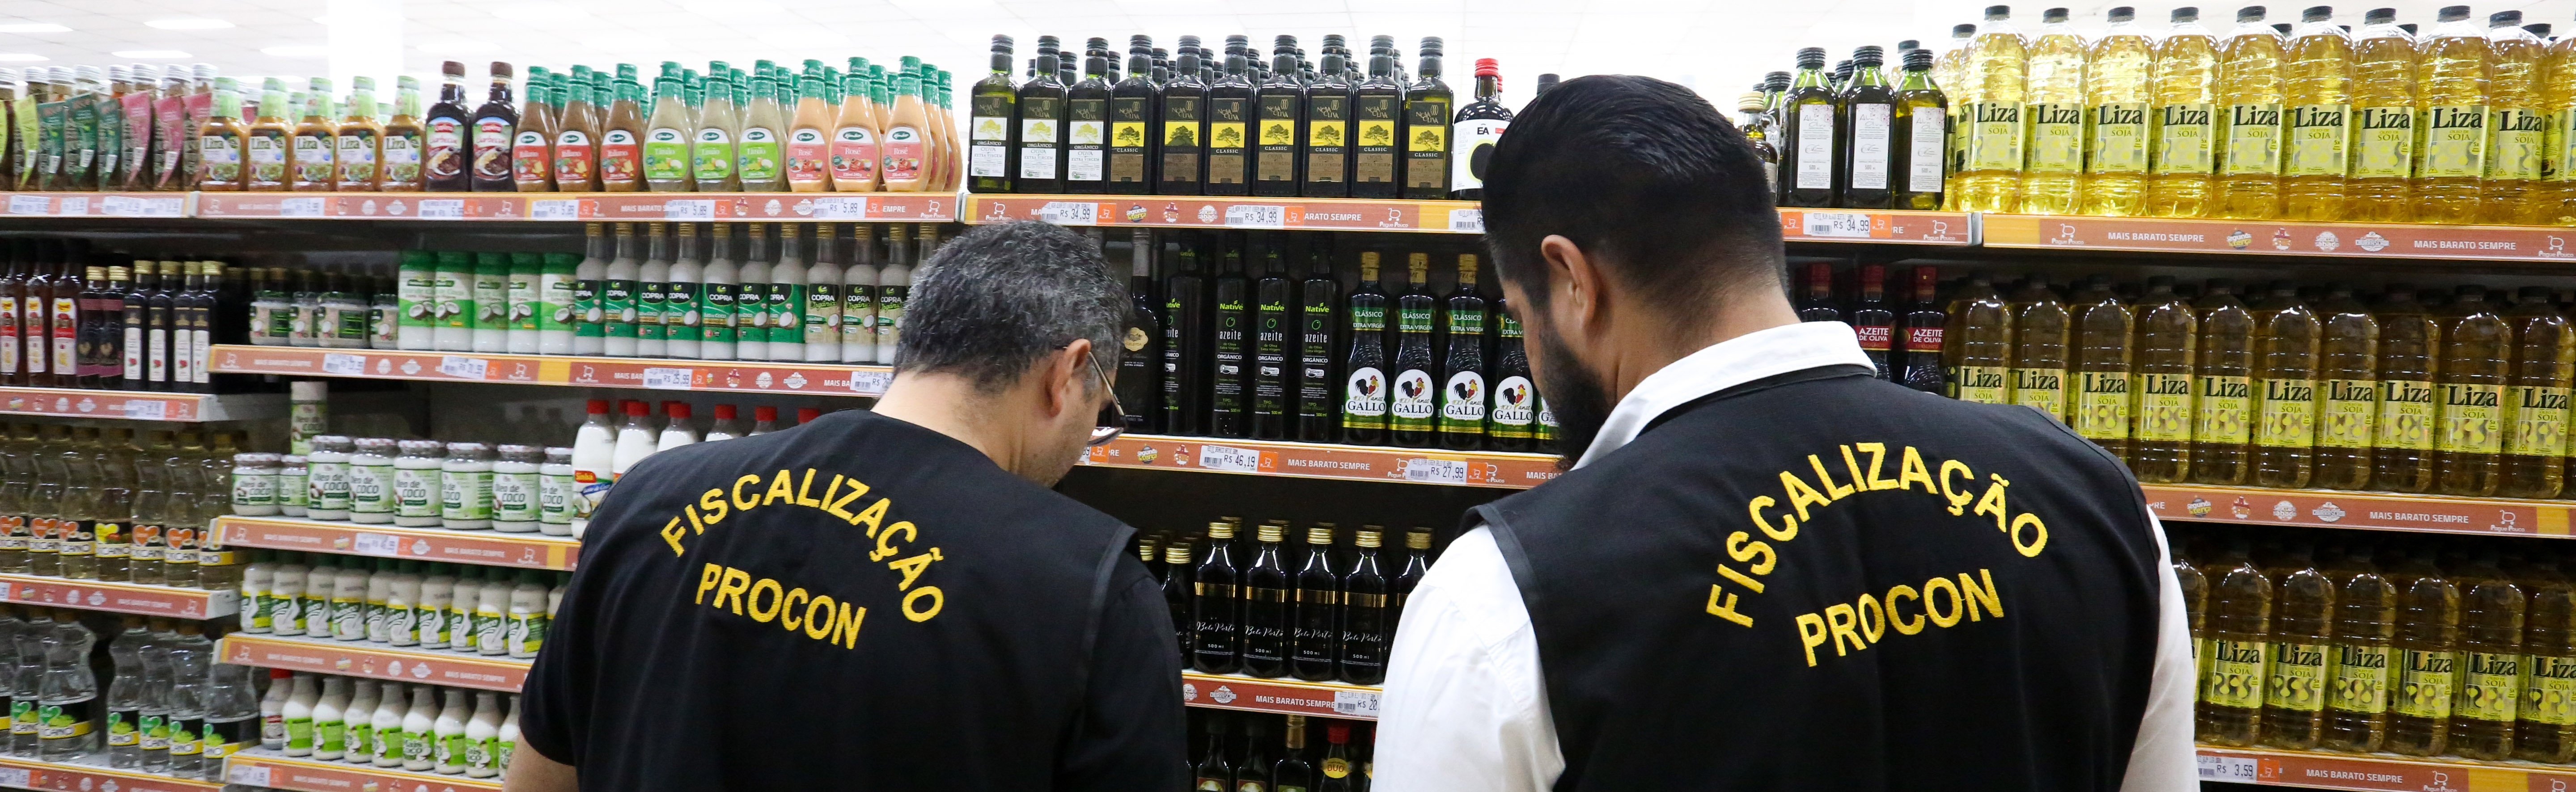 Procon realiza operação para fiscalizar azeite de oliva vendido em Rio Branco